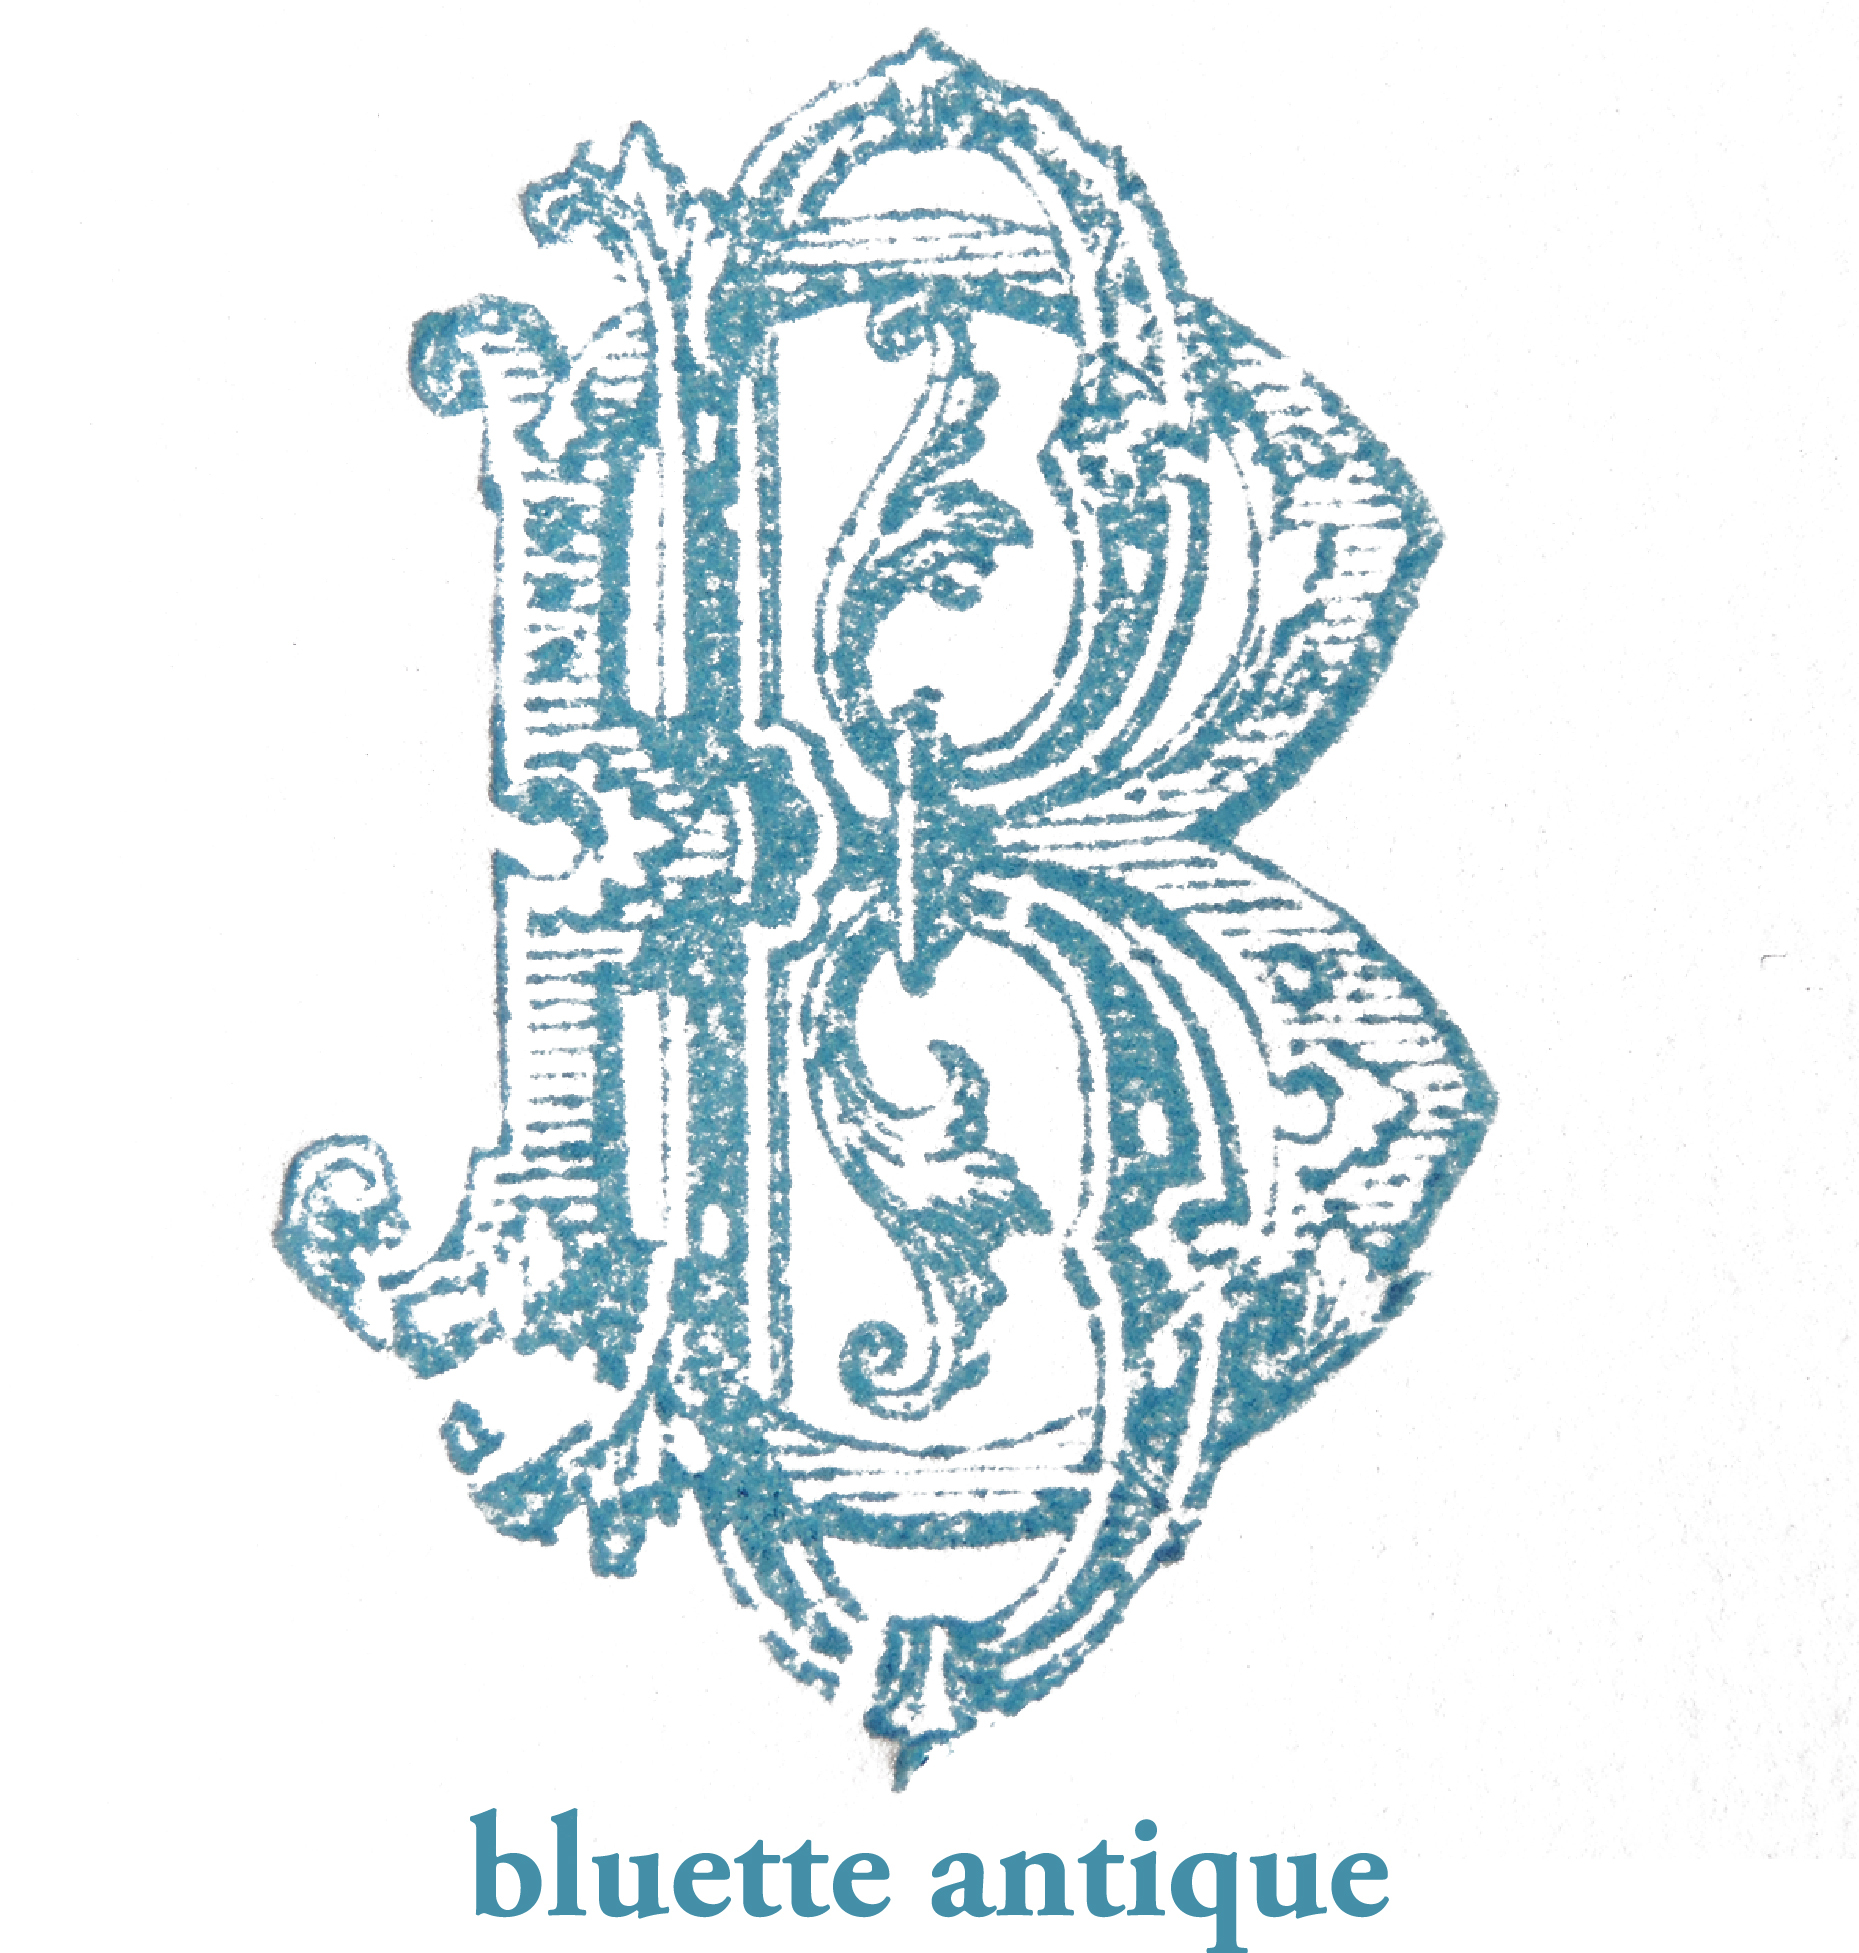 bluette antique 【ブルーエットアンティーク】